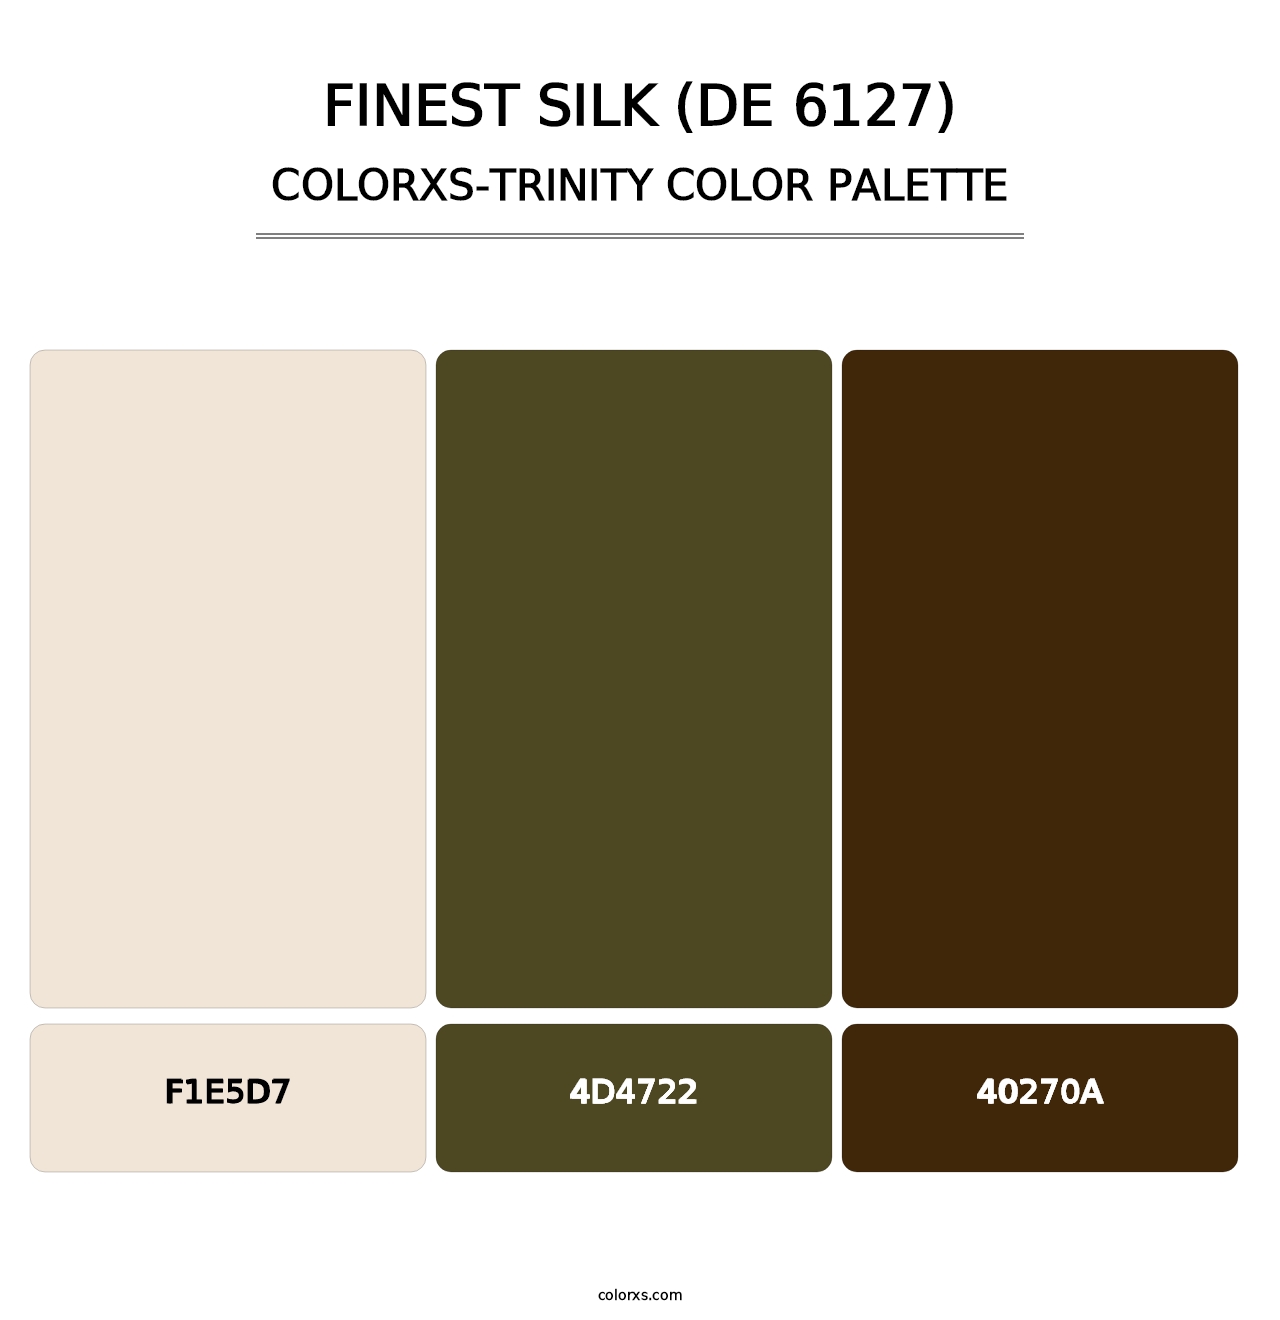 Finest Silk (DE 6127) - Colorxs Trinity Palette